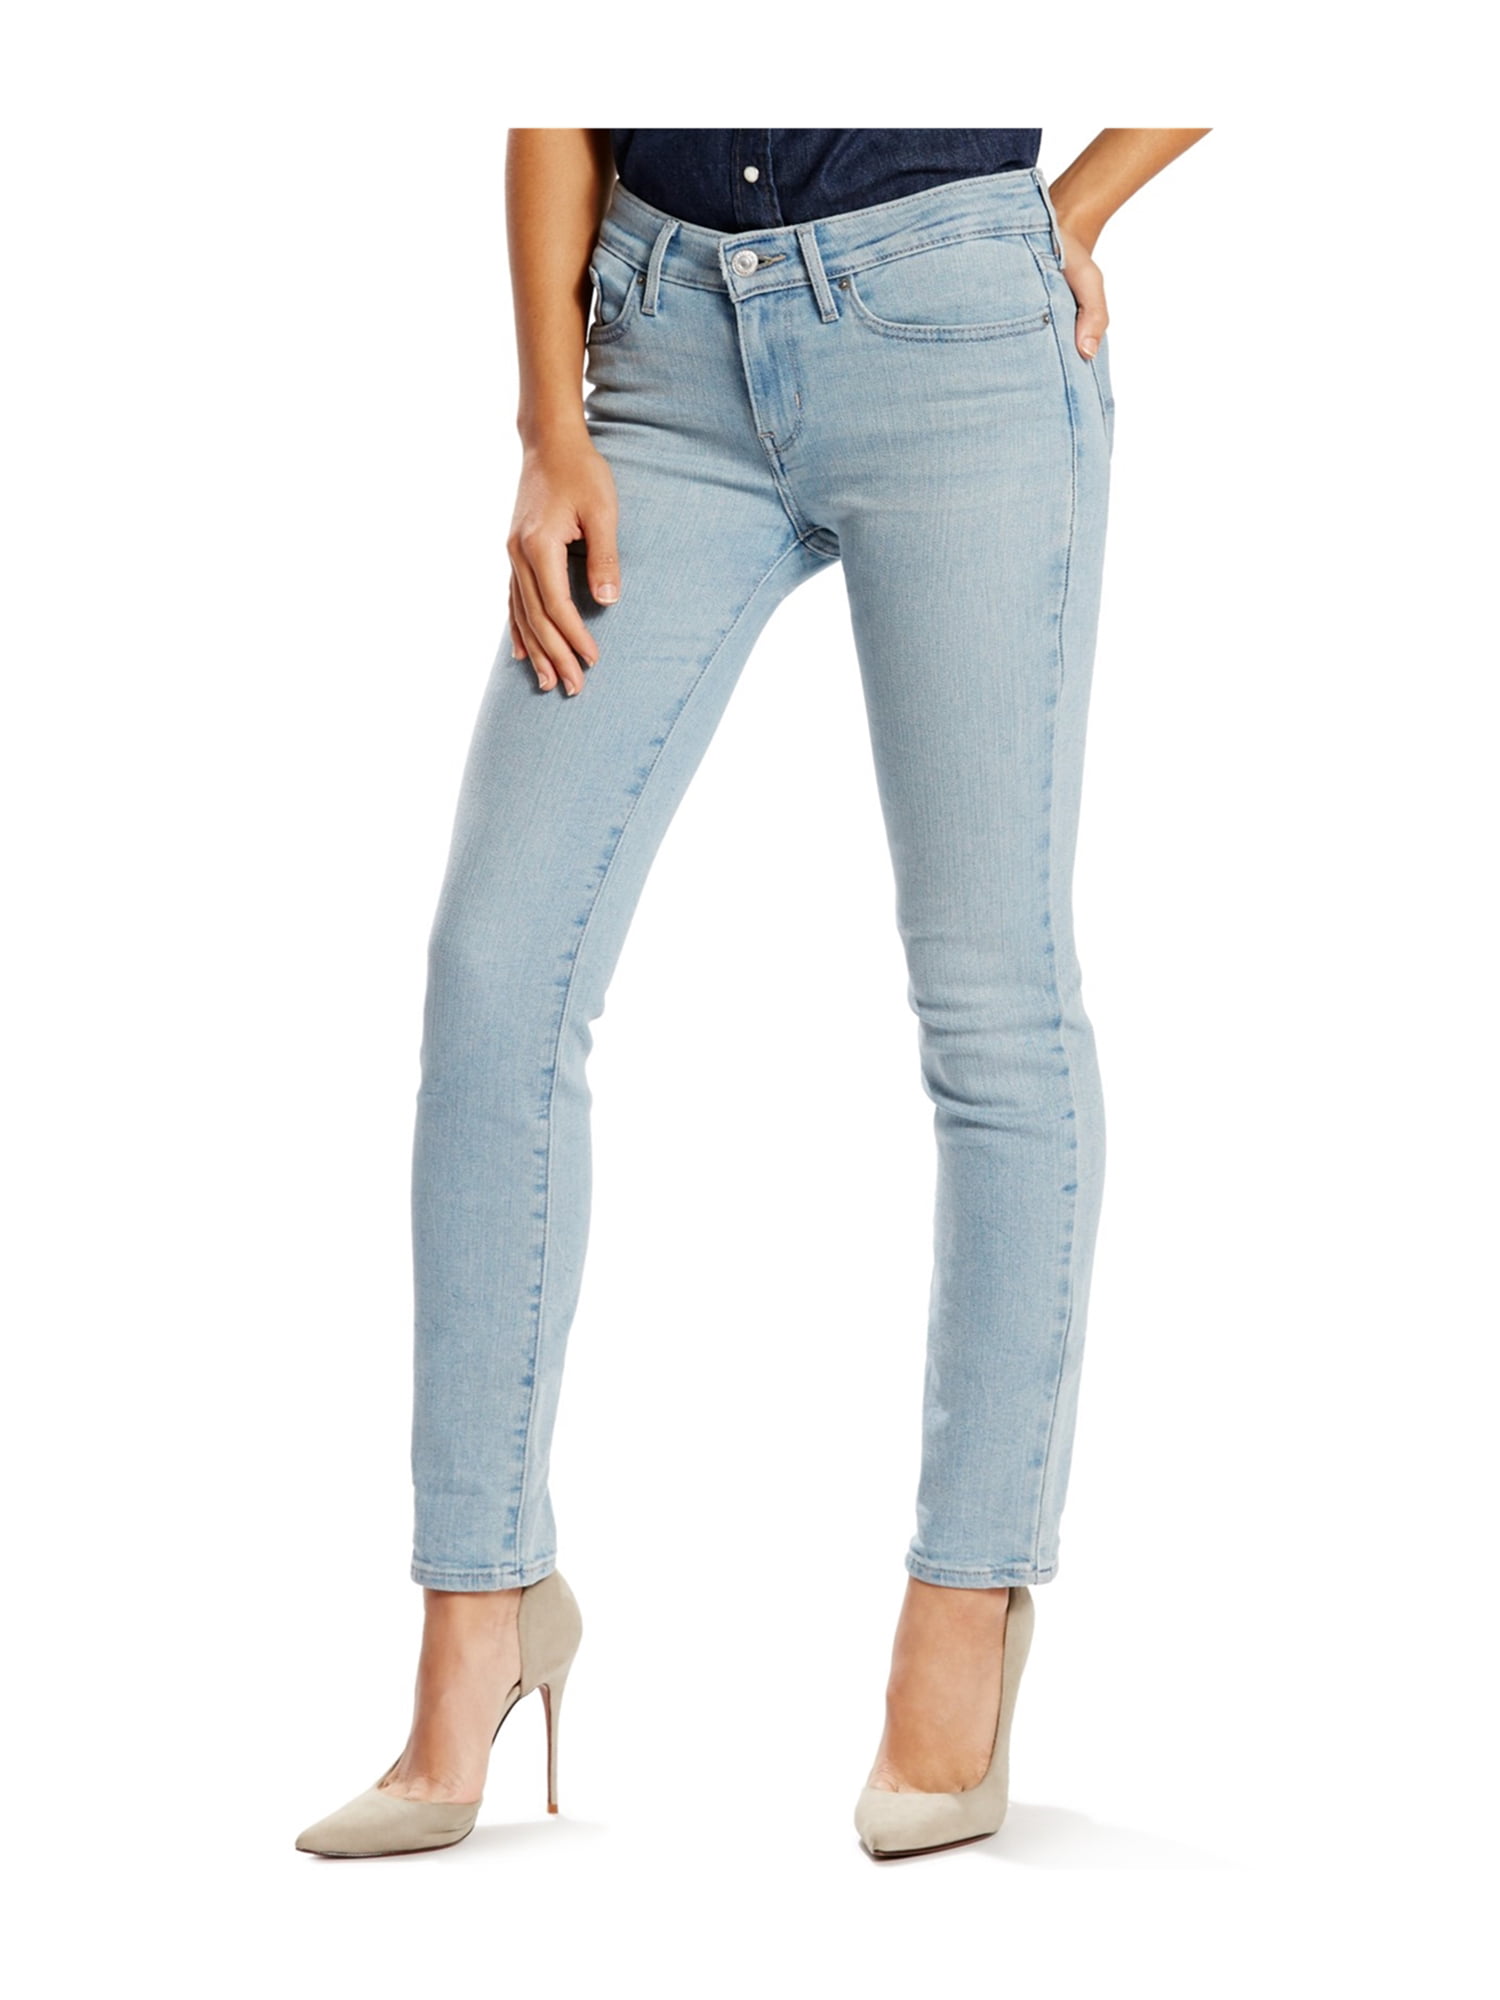 Levi's Womens 712 Slim Fit Jeans ltblue 34x32 | Walmart Canada